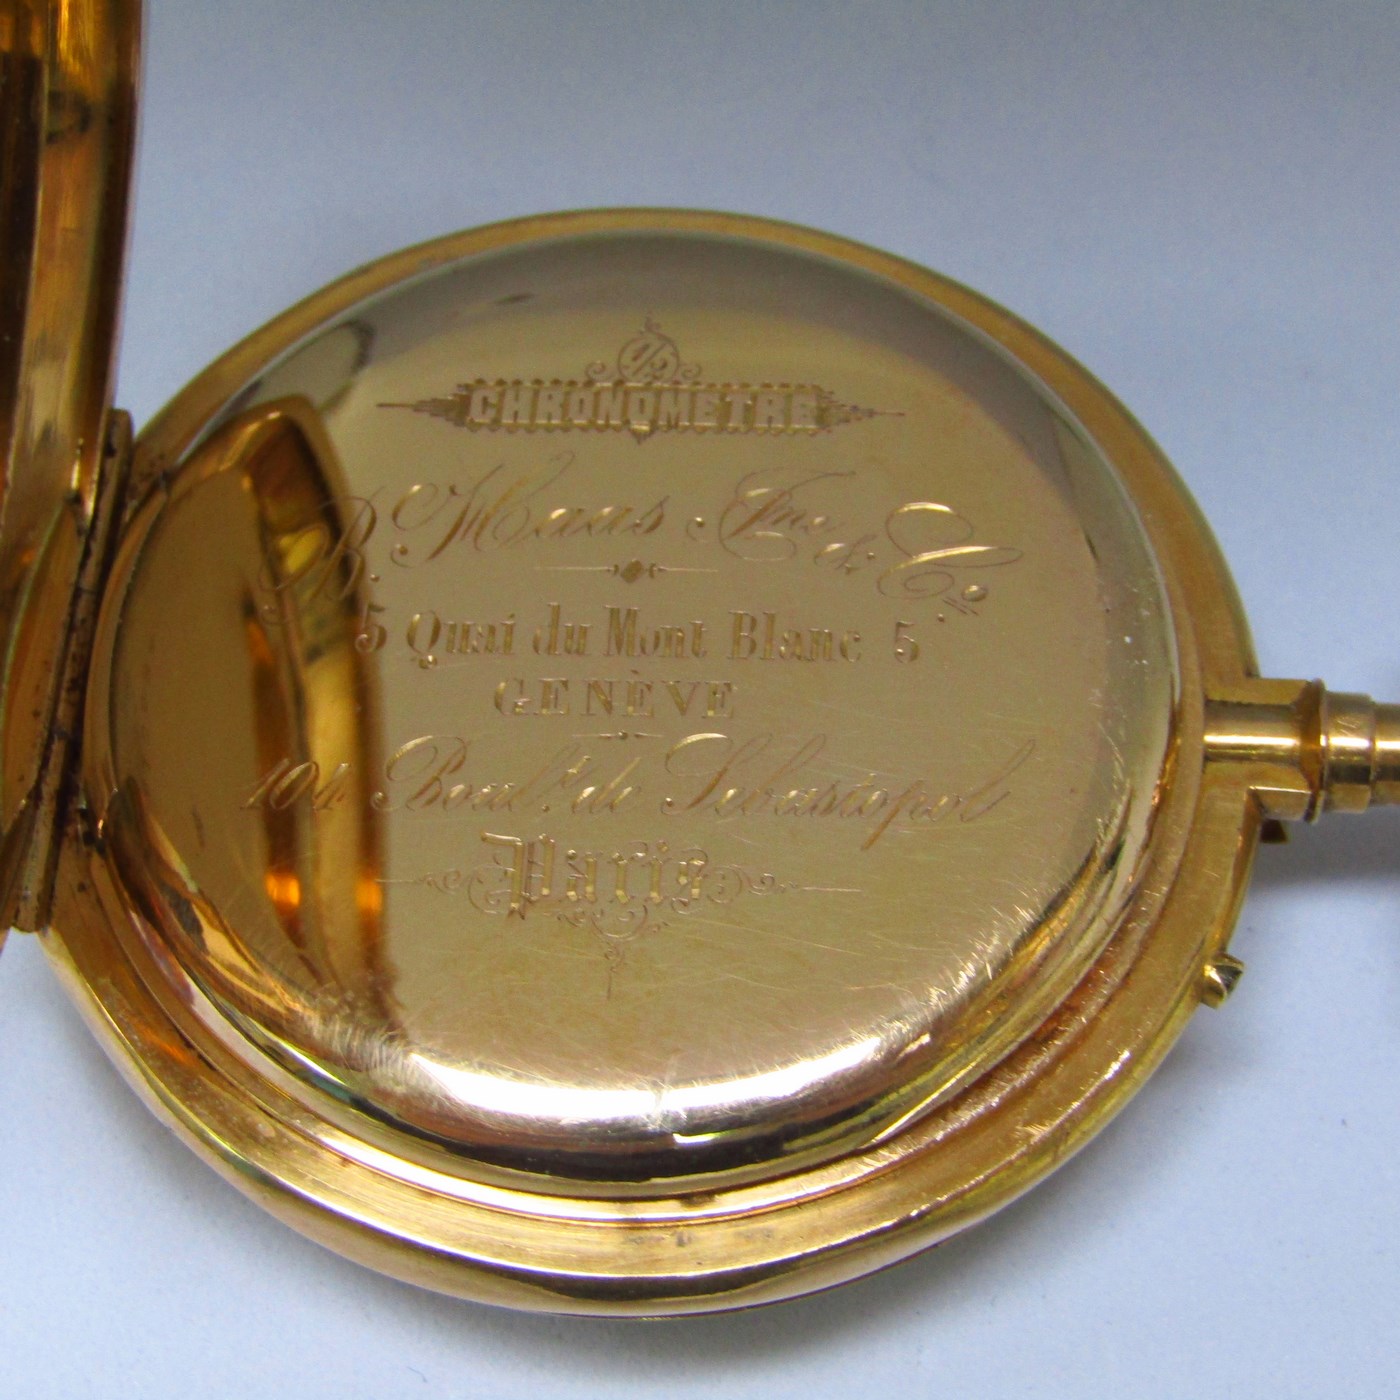 B. HAAS (Geneve y París). Reloj de bolsillo, lepine y remontoir. Suiza, ca. 1860.